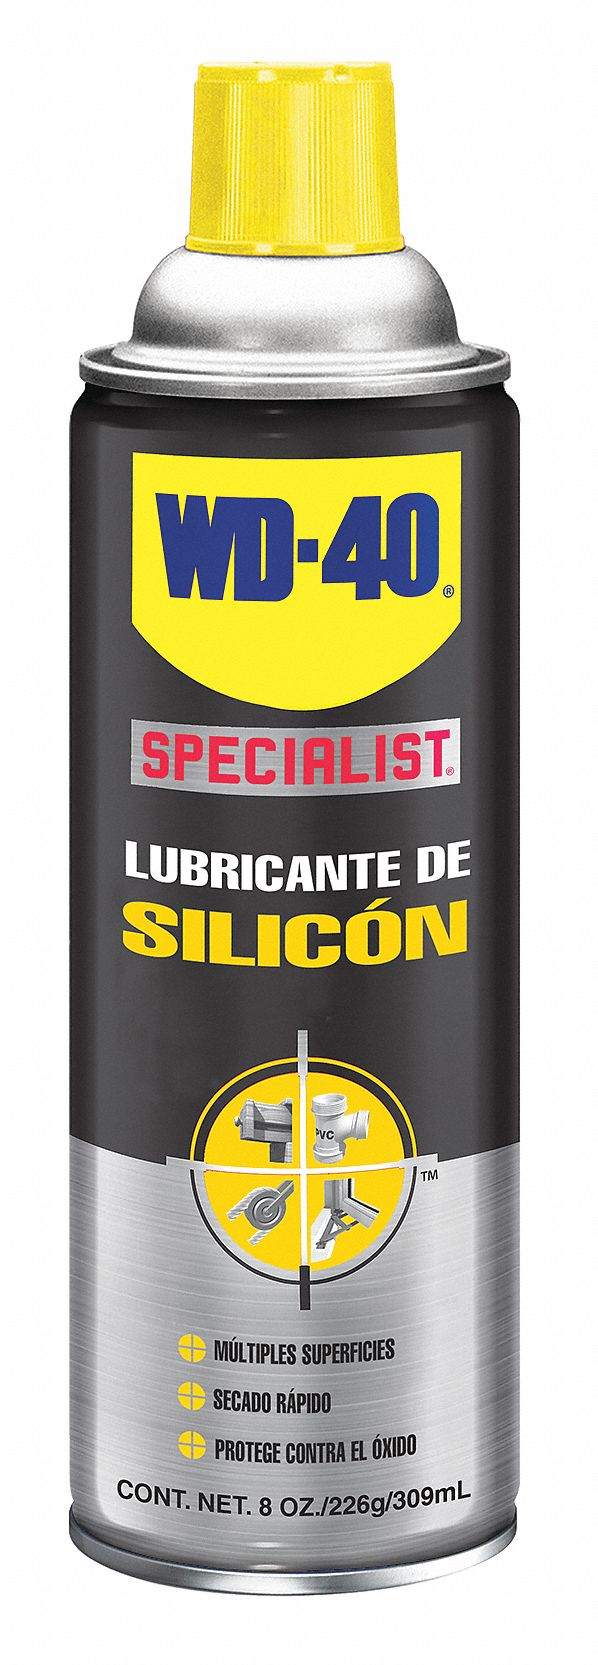  3M, silicona lubricante en spray (del tipo seco) : Automotriz